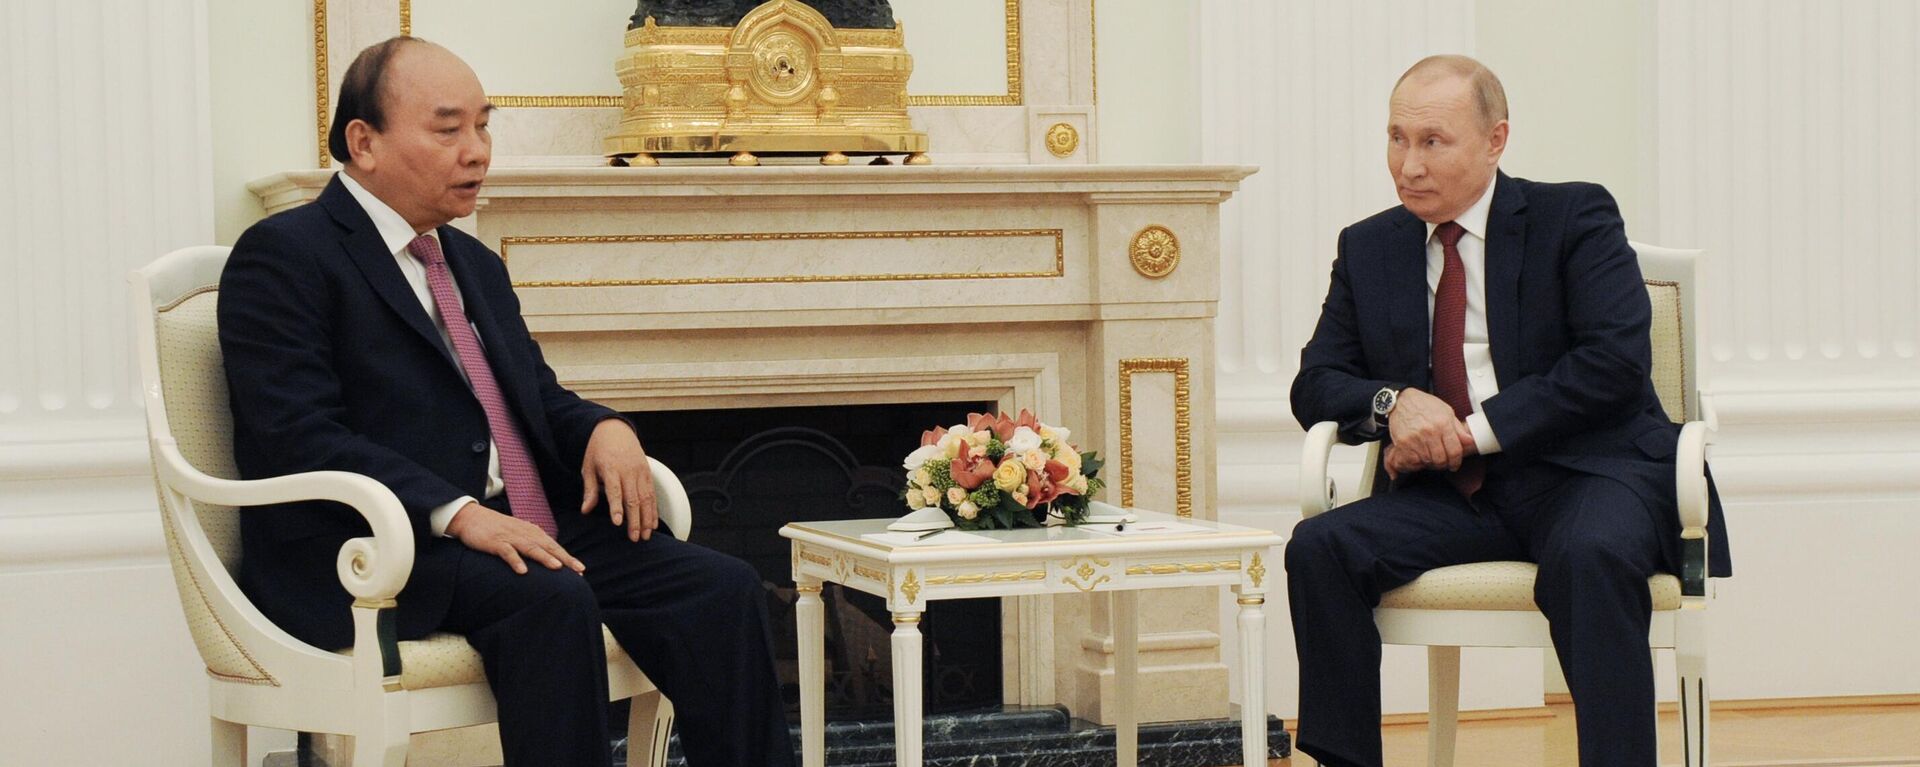 Nhà lãnh đạo Nga Vladimir Putin và Chủ tịch Việt Nam Nguyễn Xuân Phúc hội đàm tại Moskva - Sputnik Việt Nam, 1920, 30.11.2021